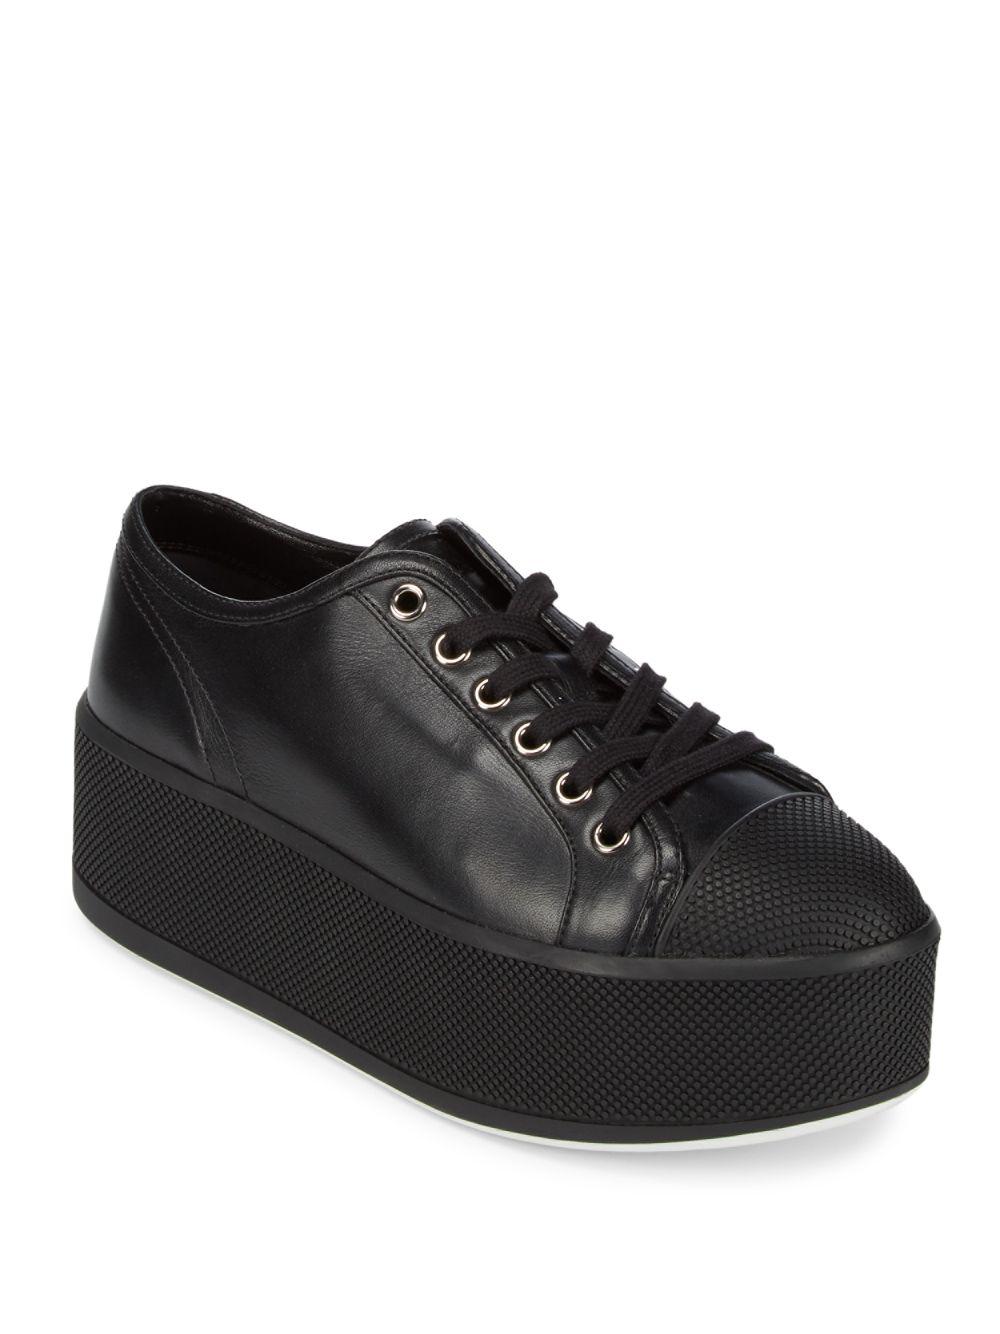 Prada Shoelace Sneakers in Black | Lyst